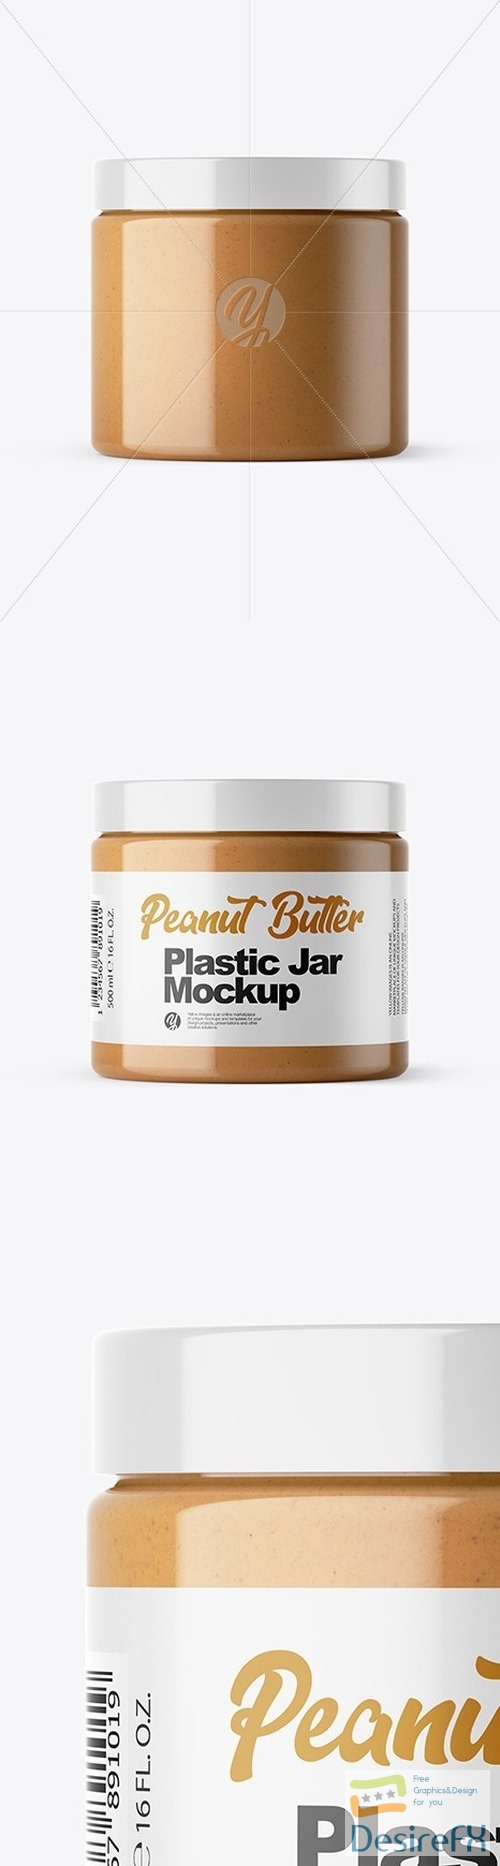 Peanut Butter Jar Mockup 46833